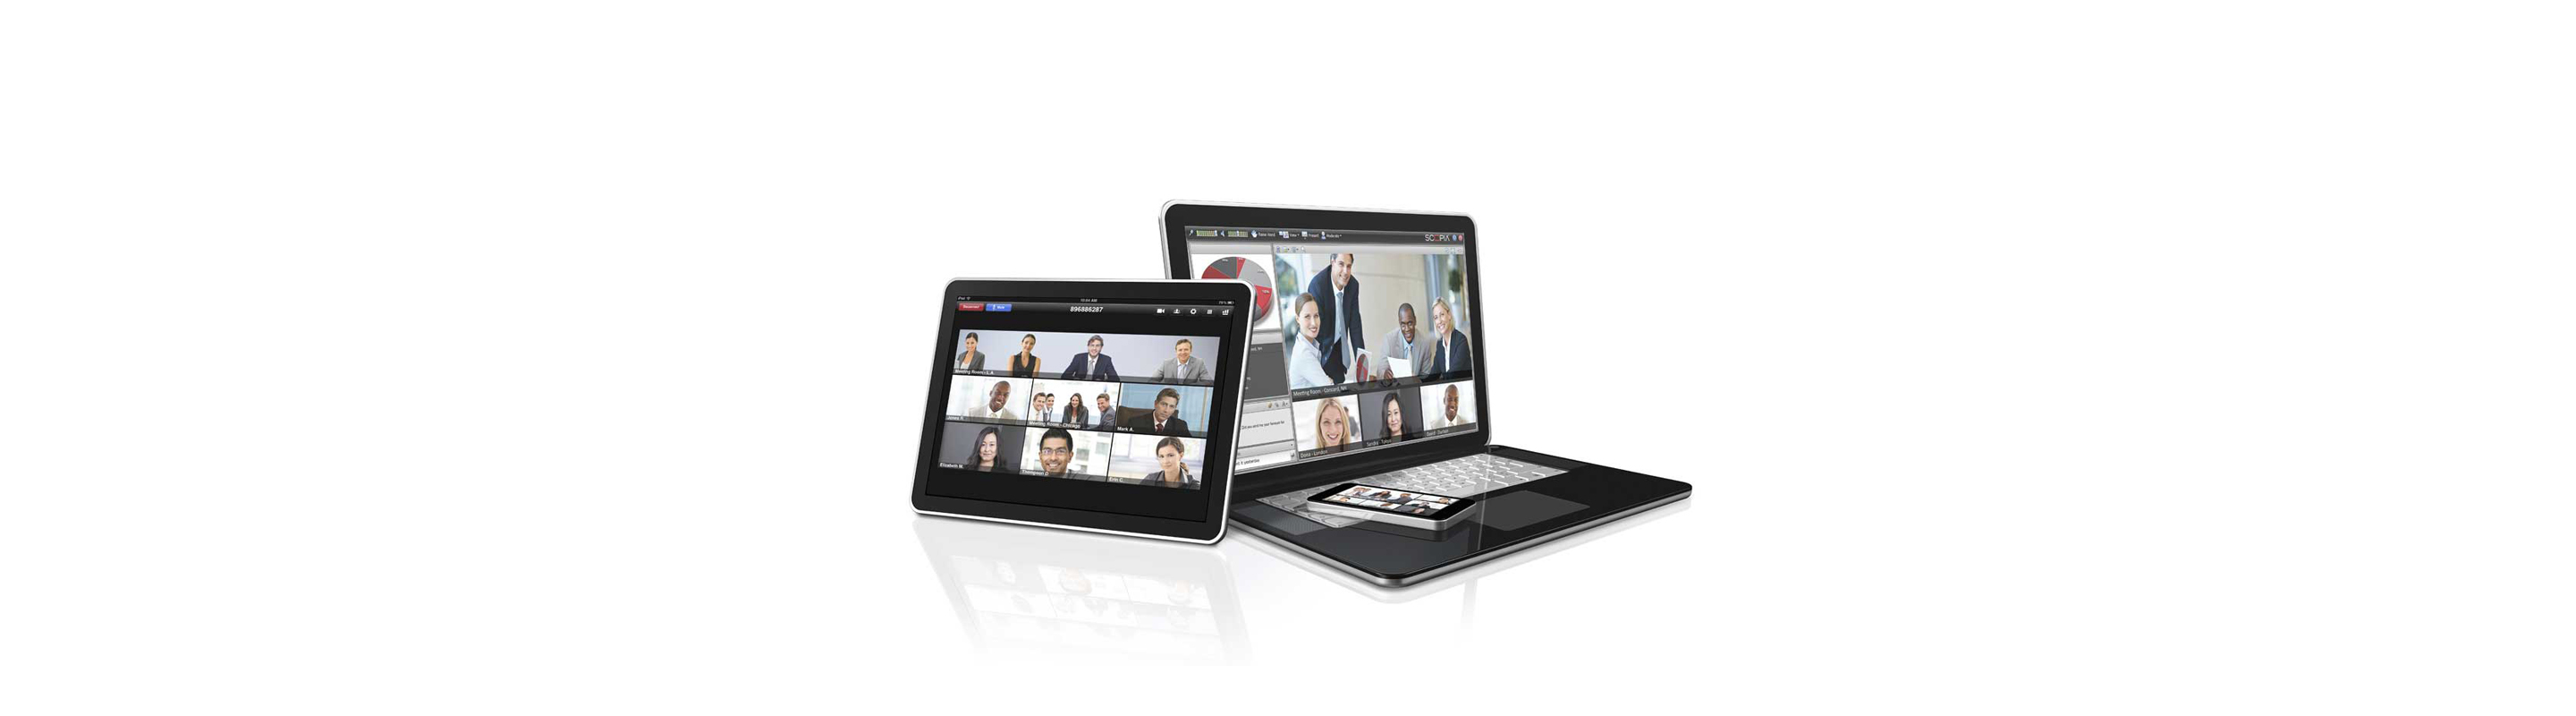 Avaya（アバイア）製品テレビ会議システム機能比較